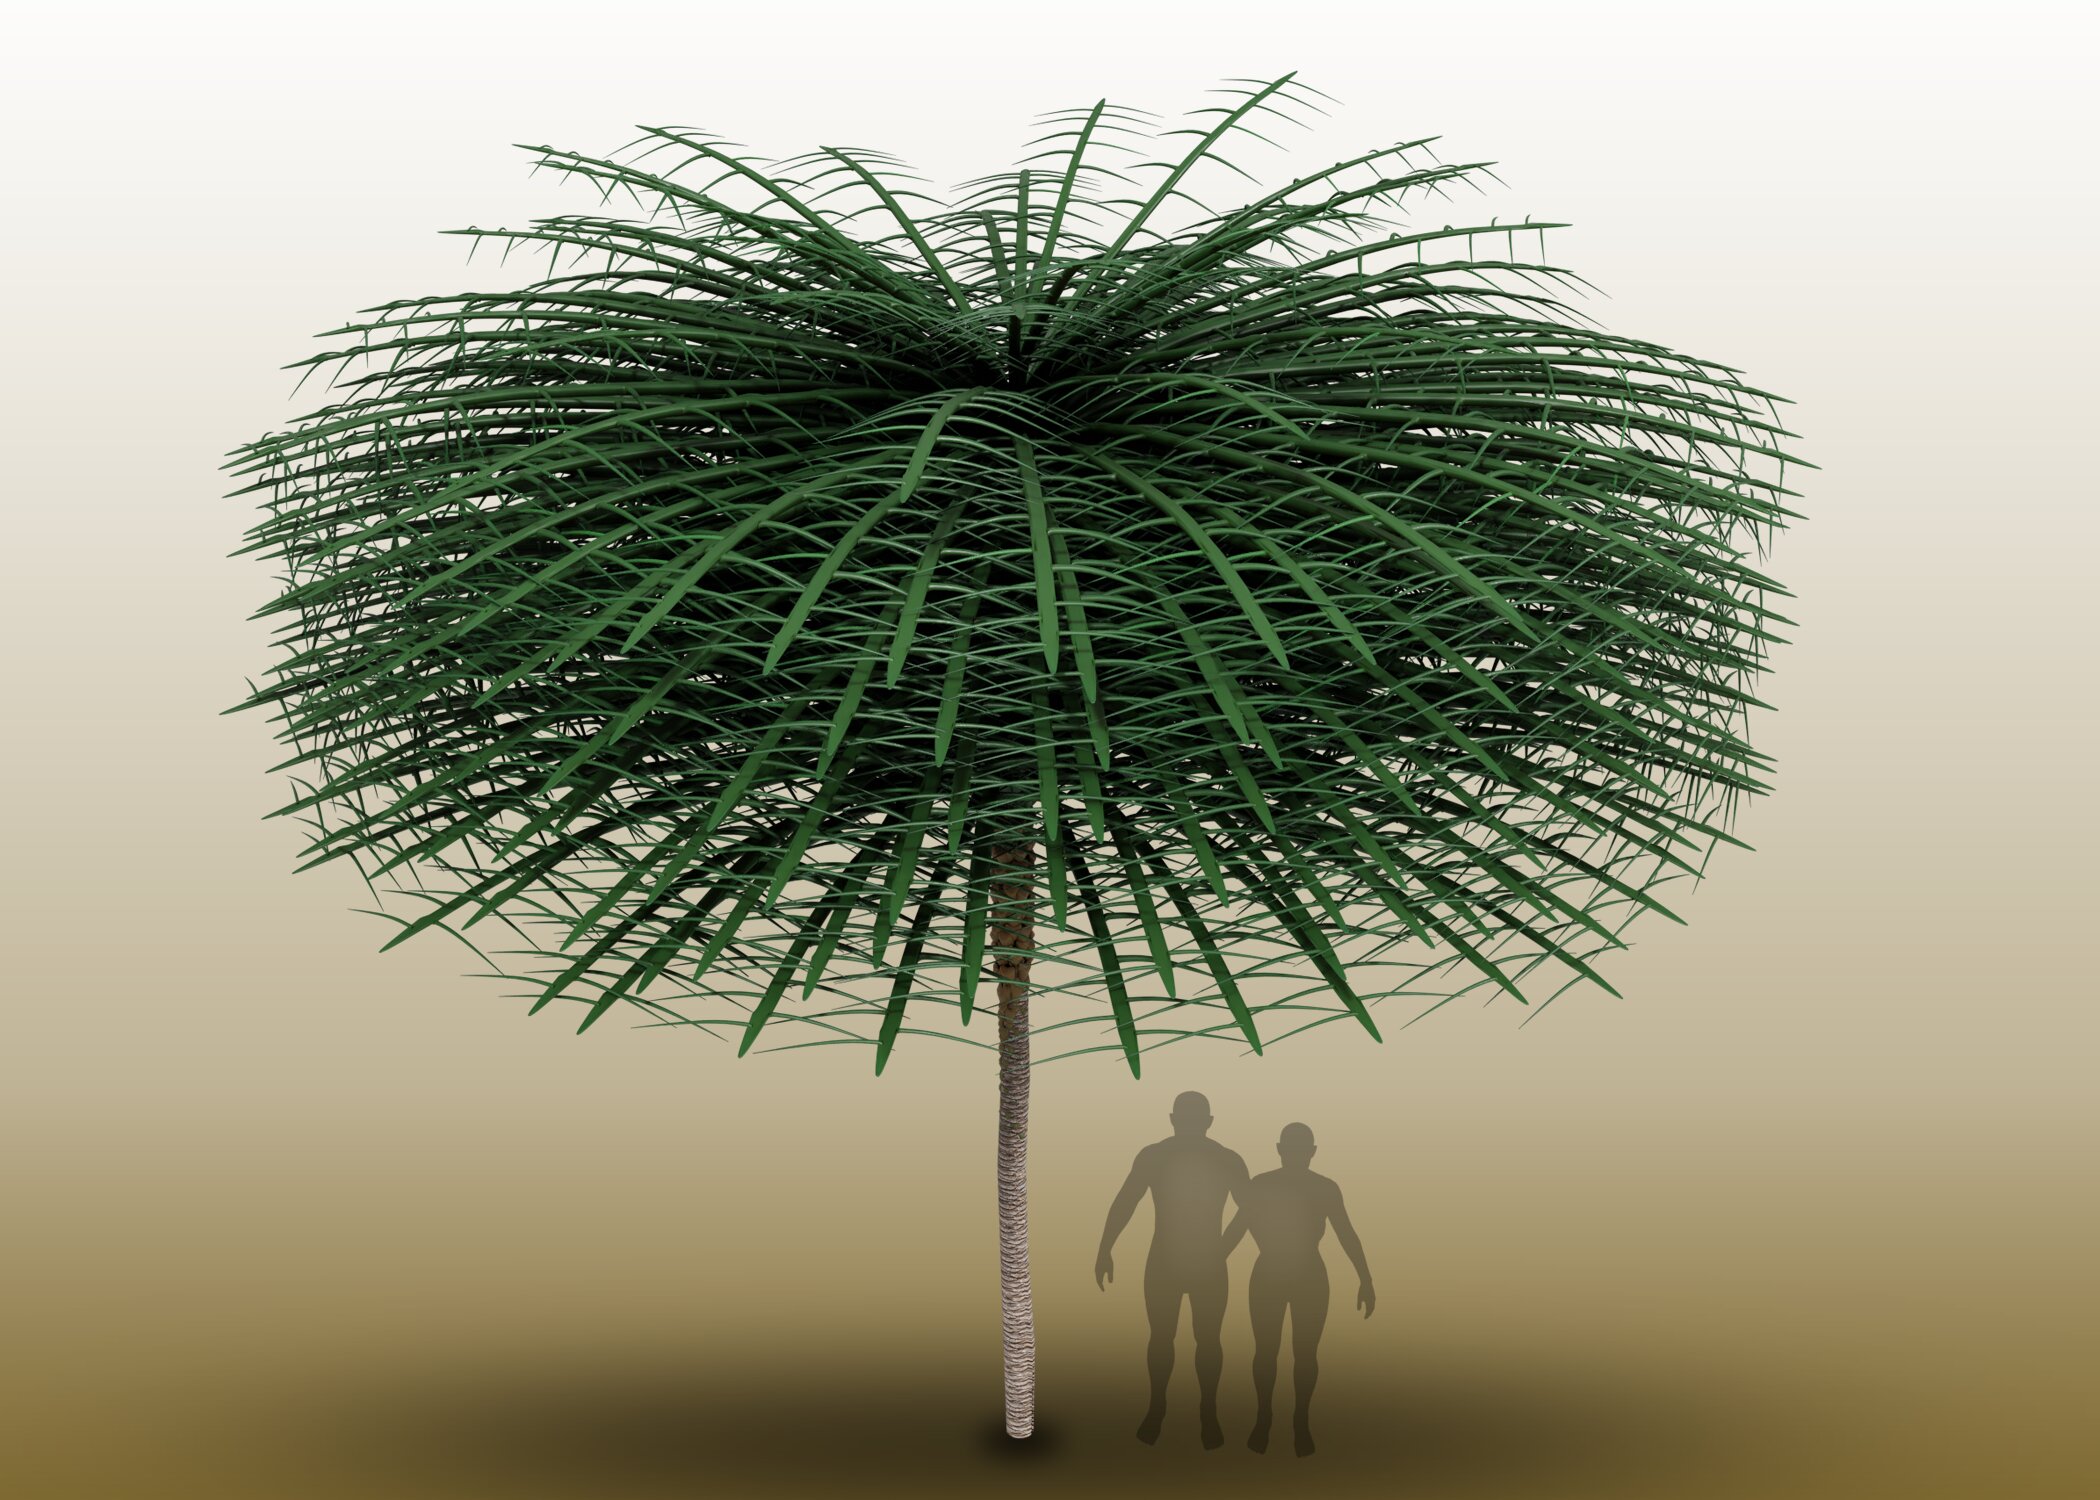 Model stromu Sanfordiacaulis se zjednodušenou strukturou větvení pro snadnější představu stavby koruny, která mohla mít až 30 metrů krychlových. Osoby ve stínu stromu pochopitelně postávat v té době ještě nemohly. Umělec je doplnil jen jako měřítko. 